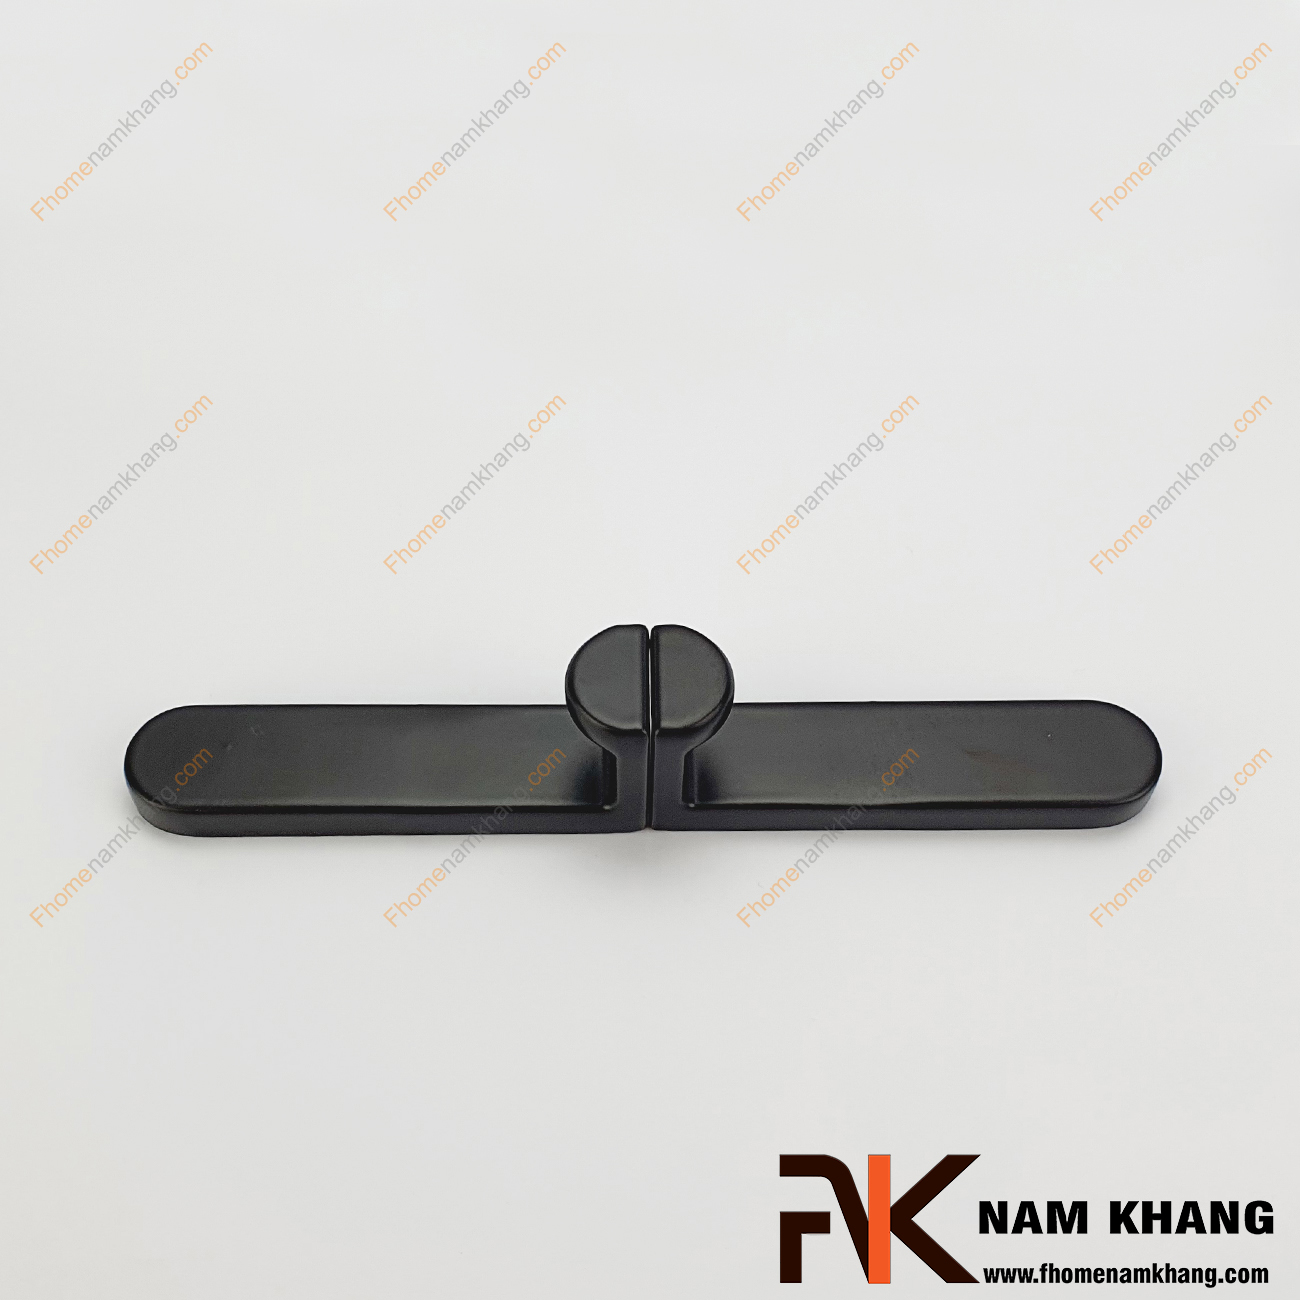 Tay nắm tủ phối hợp màu đen mờ NK121L-64-64D là dạng tay nắm tủ phối hợp được ghép nối từ 2 bộ phận tay nắm khác nhau để tạo thành thanh nắm có núm tròn.